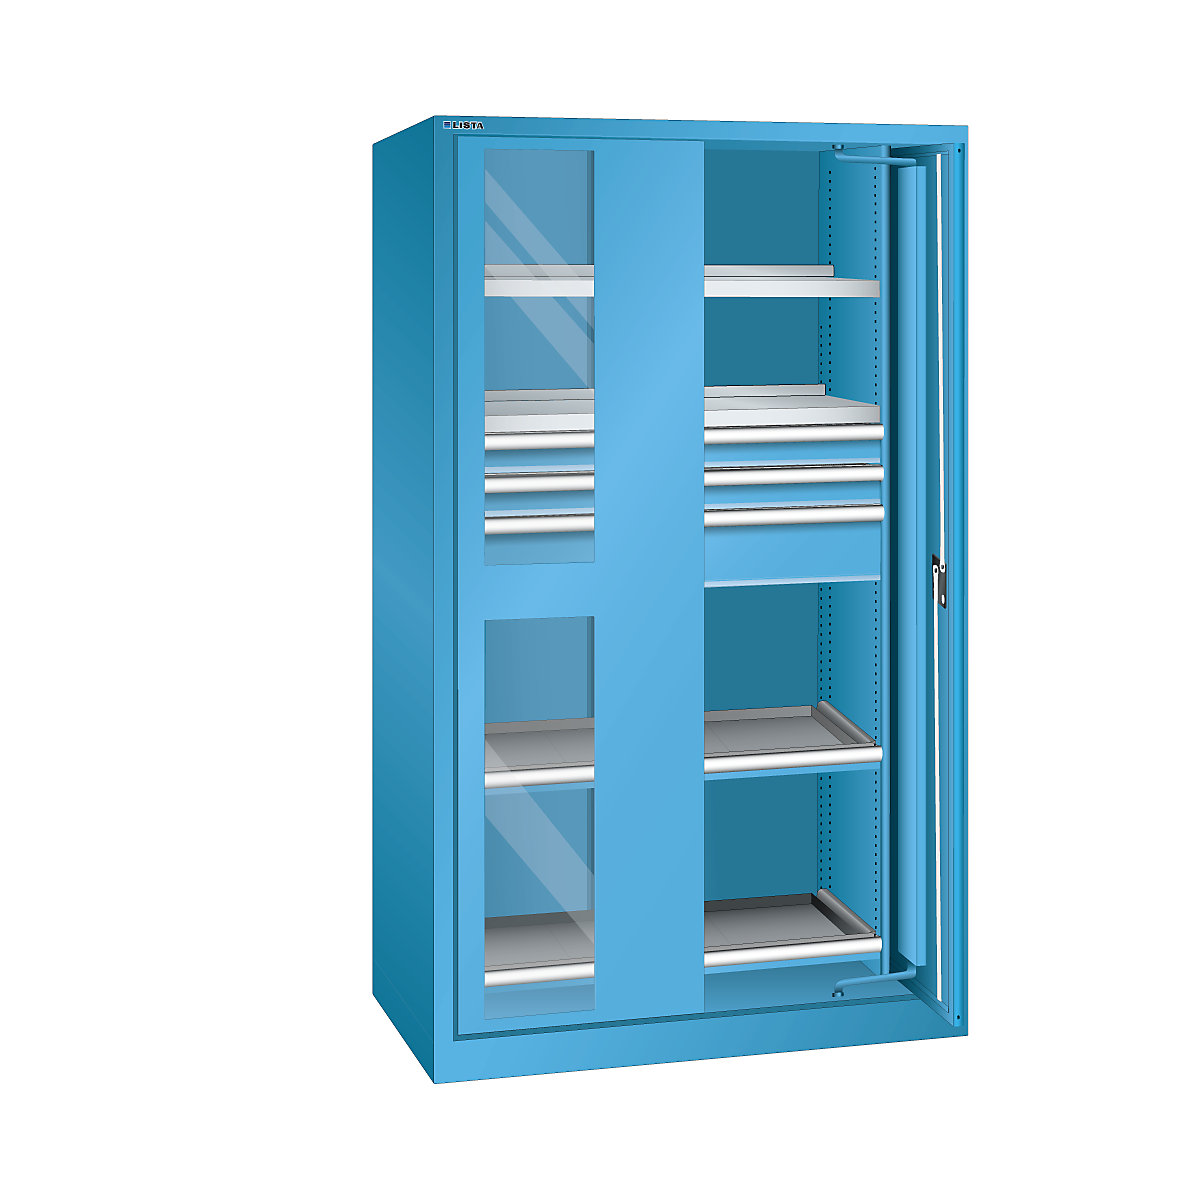 Armario con puertas retráctiles para cargas pesadas – LISTA, 3 cajones, 4 baldas, con puertas con ventanillas, azul luminoso-8